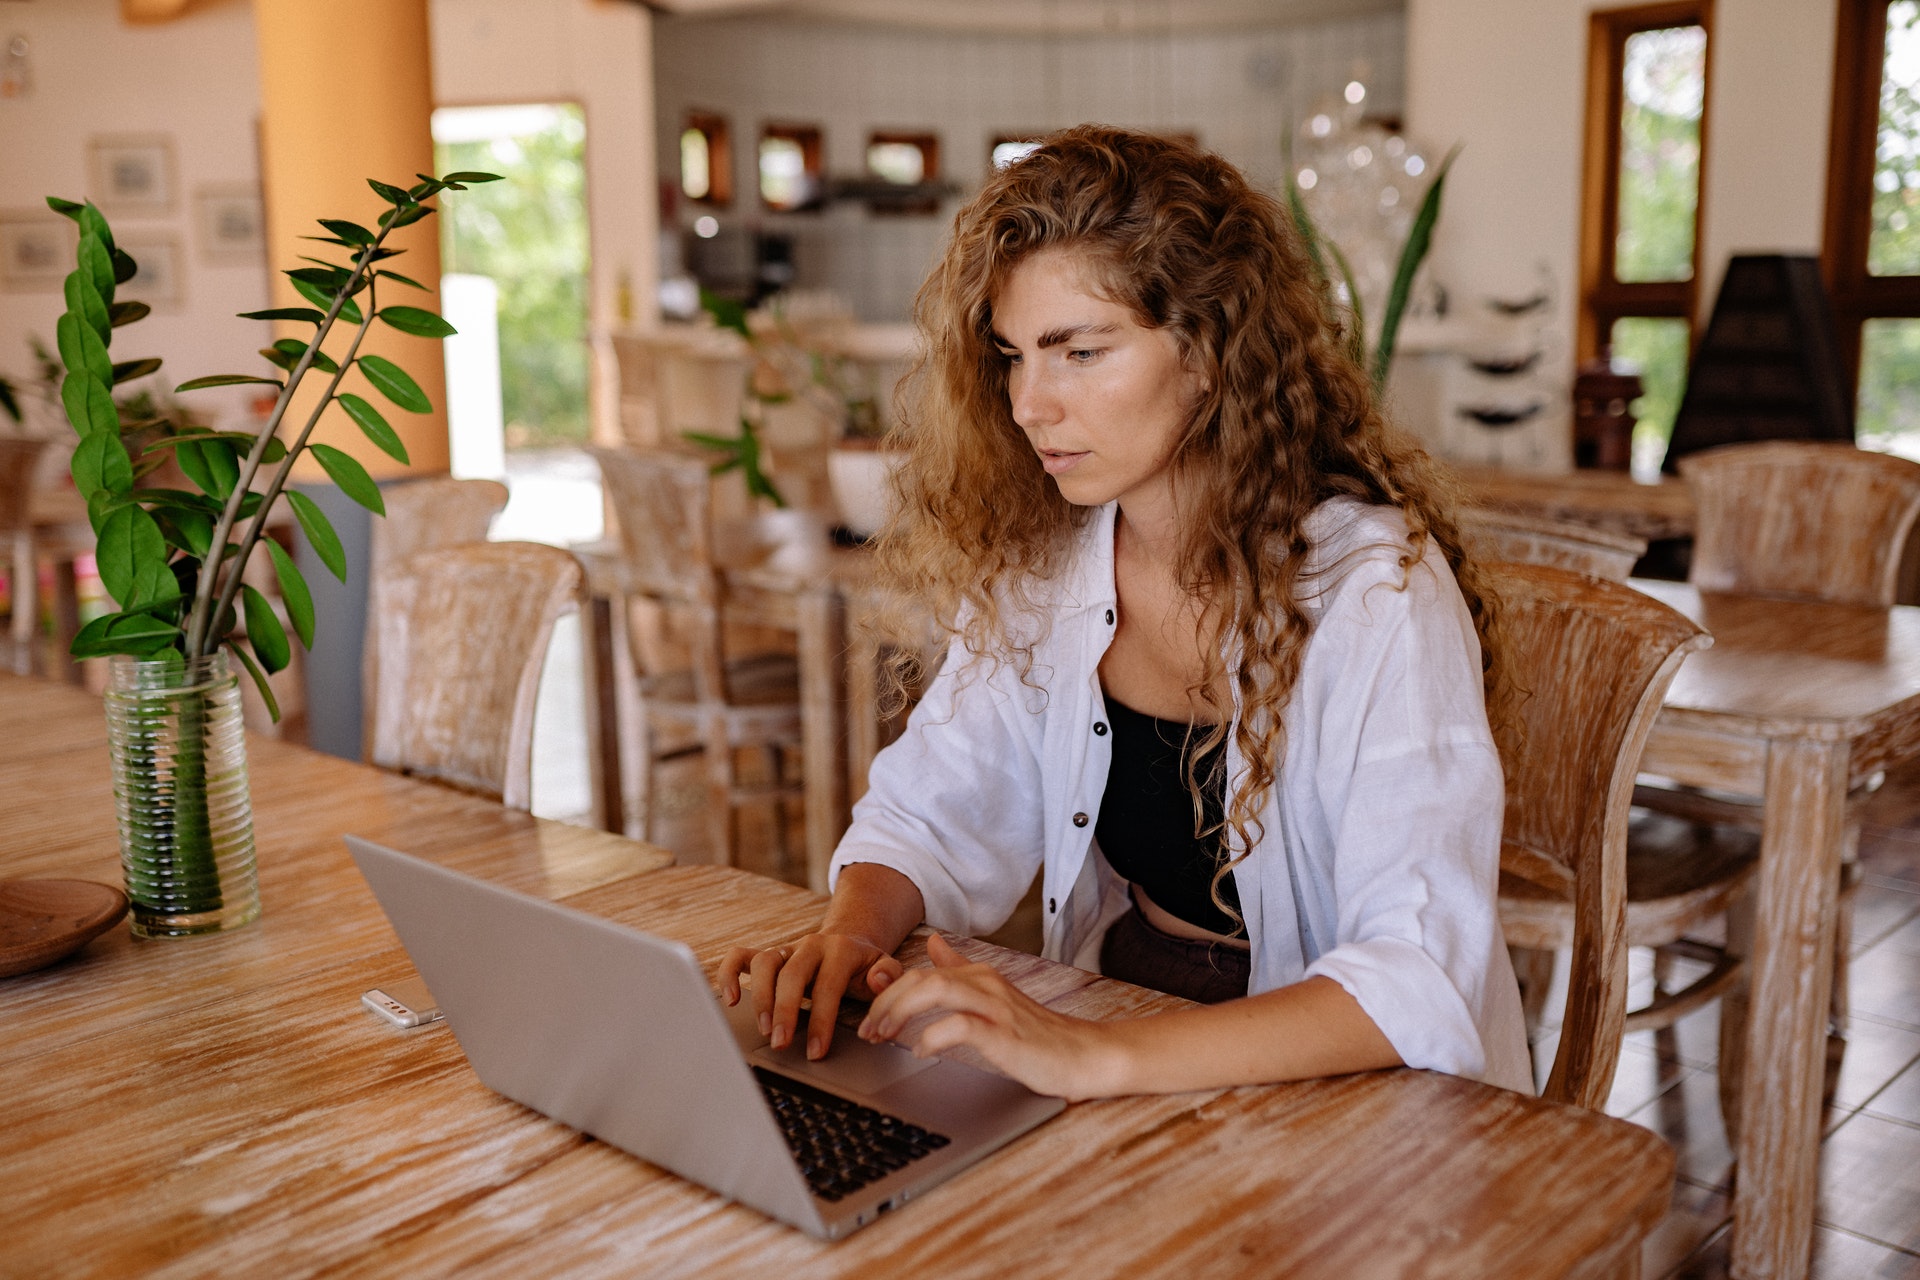 Mulher sentada em frente a um computador na copa. Imagem ilustrativa do texto empreendimentos para iniciantes.